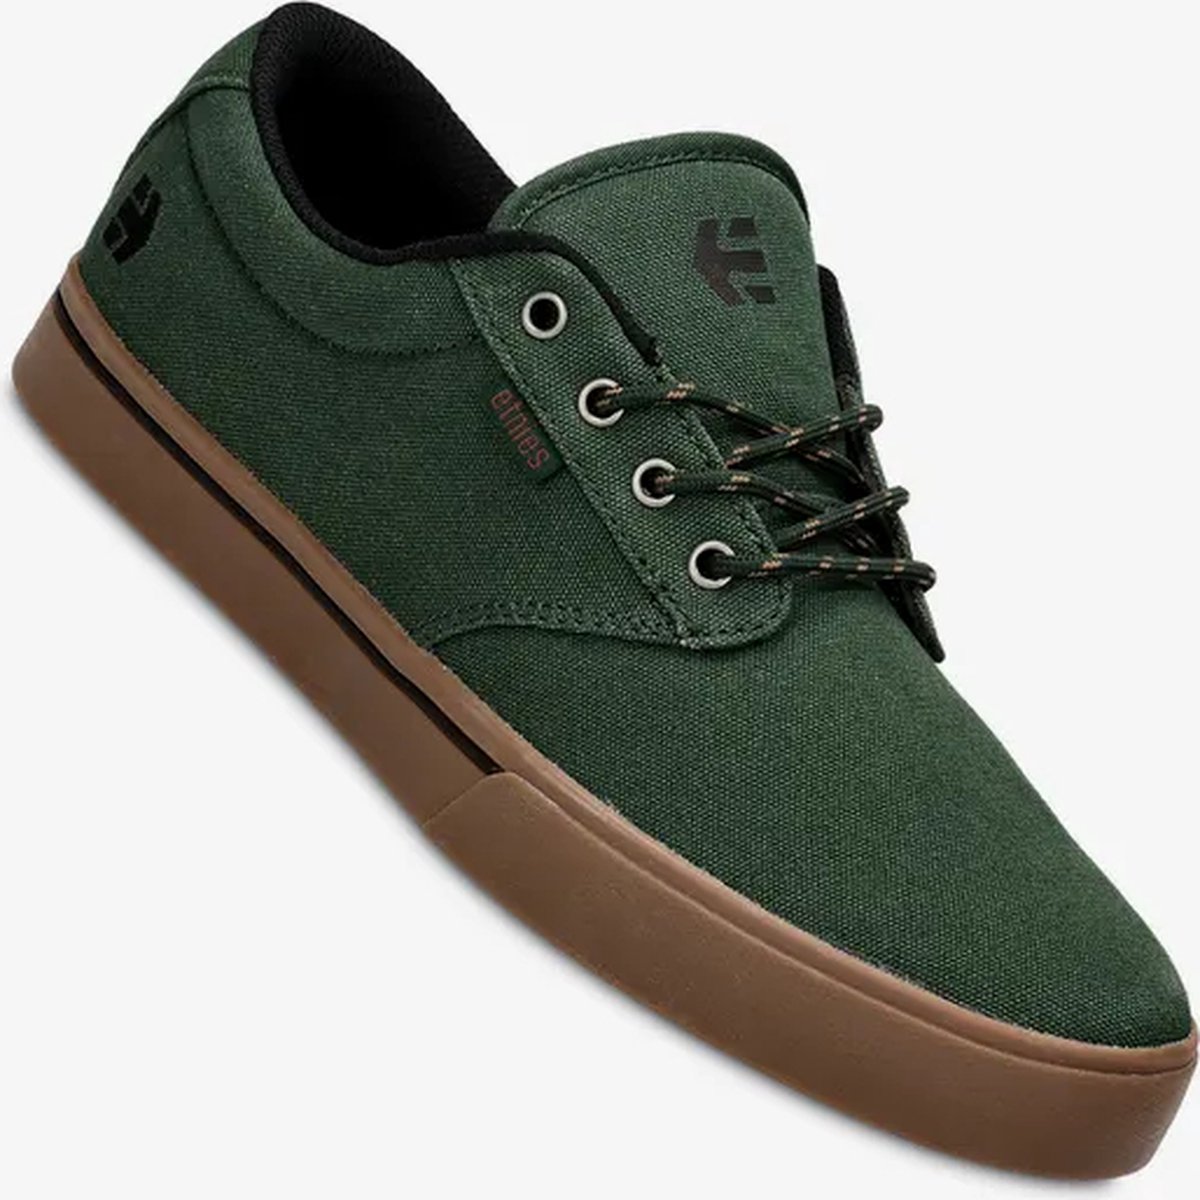 Etnies - Jameson - 2 Eco - Maat 45.5 - Groen - Zwart - Skate schoen - Casual schoen